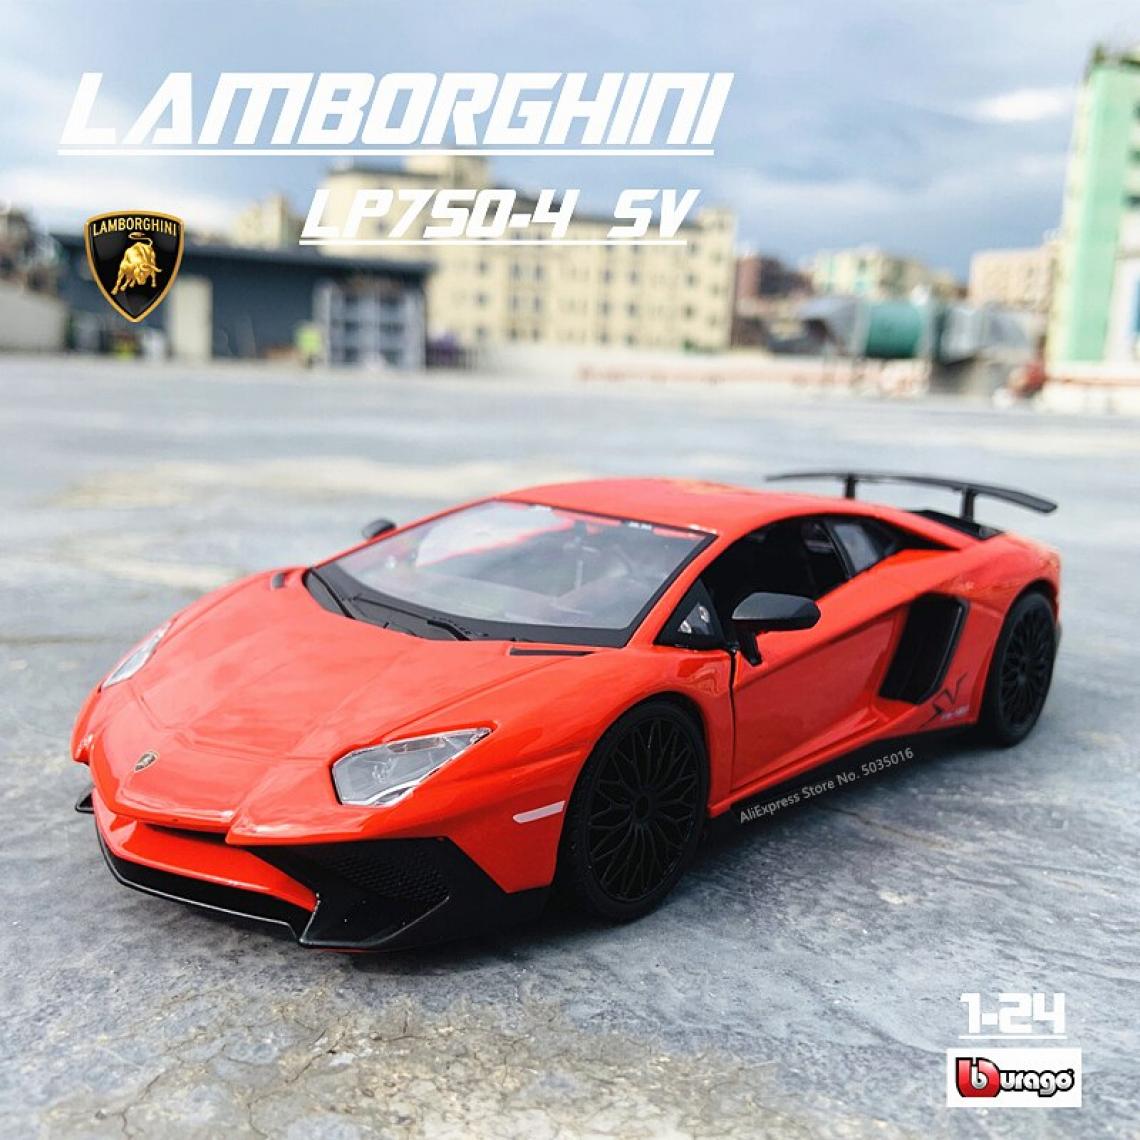 Universal - 1: 24 Lamborghini LP750 4 SV modèle haute imitation moulée en métal jouet enfant petit ami cadeau imitation alliage voiture | Voiture jouet moulée sous pression (rouge) - Voitures